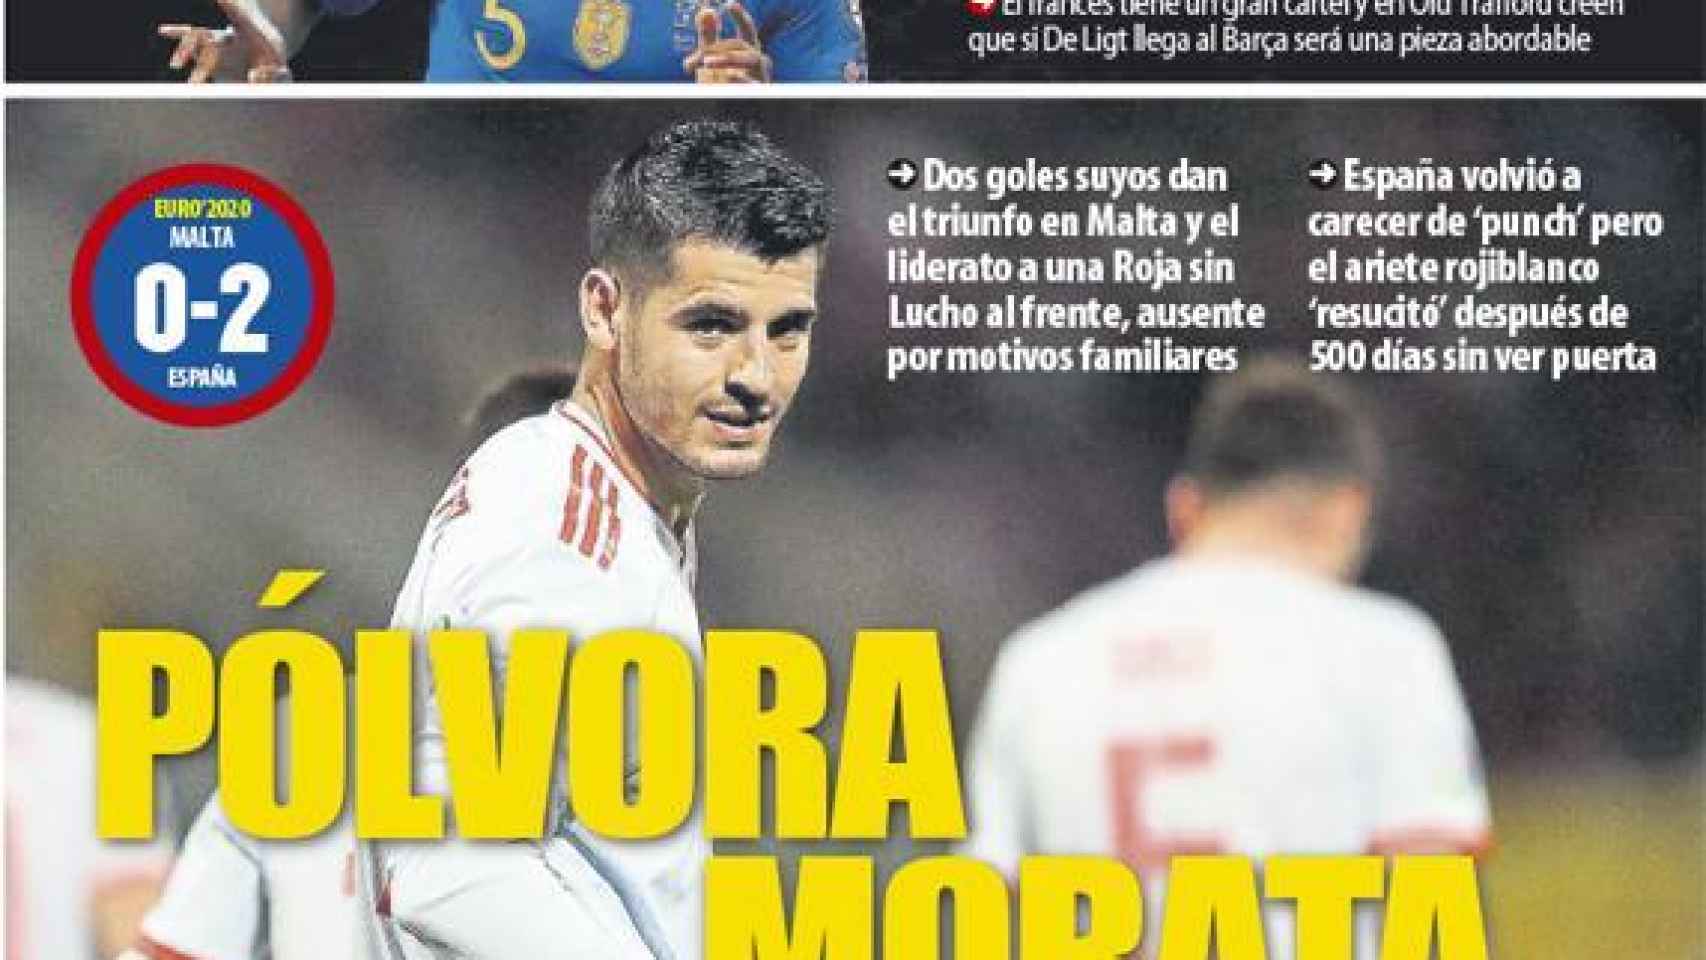 La portada del diario Mundo Deportivo (27/03/2019)